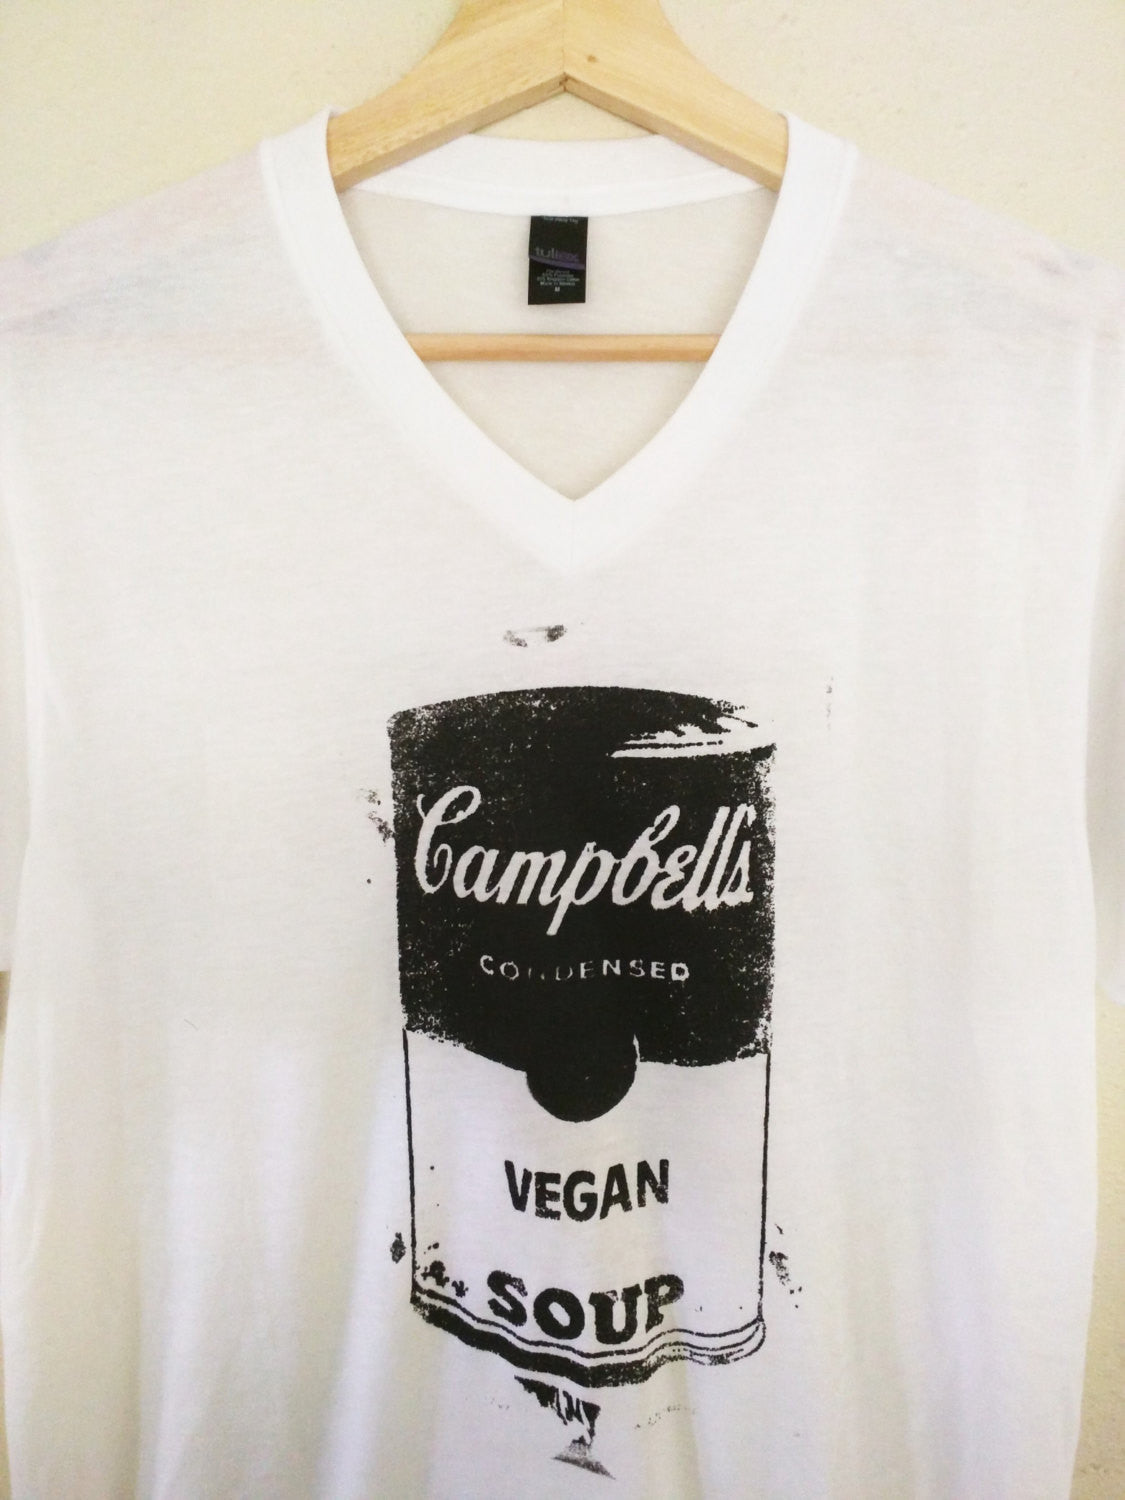 Handmade Organic Made in USA T-shirt by L3F0u "Vegan Soup" a la Warhol